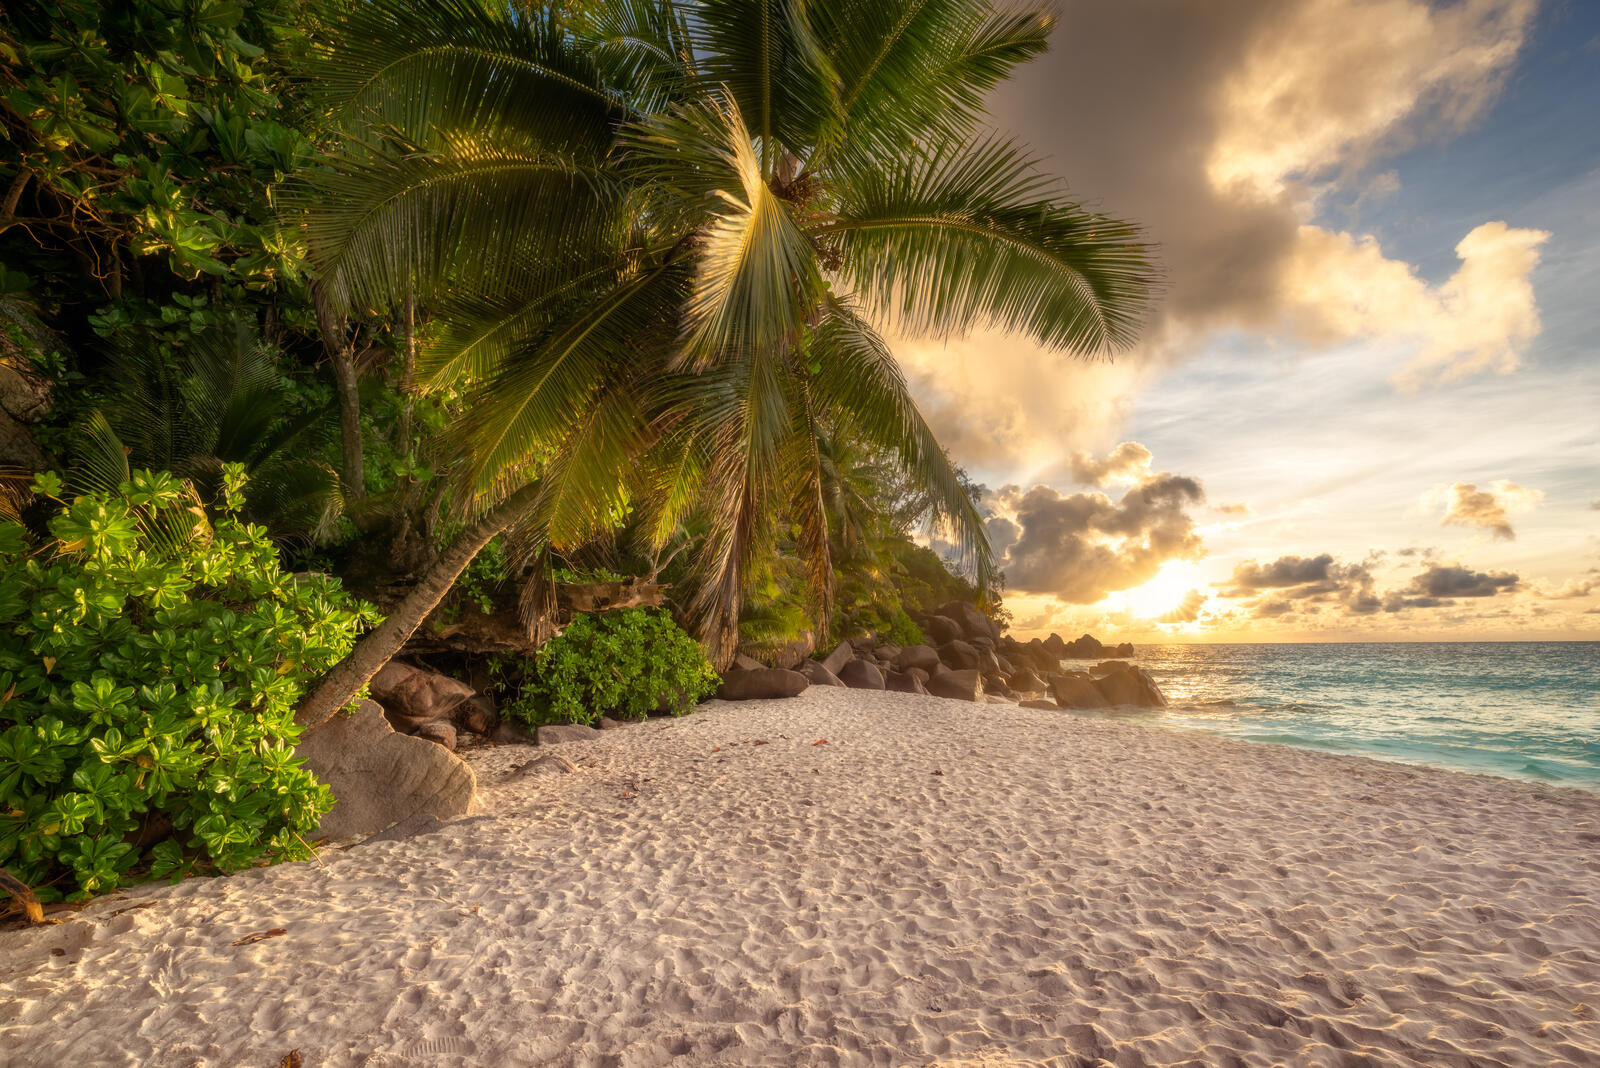 Обои Сейшельские острова на острове Праслин на закате море пляж на рабочий стол